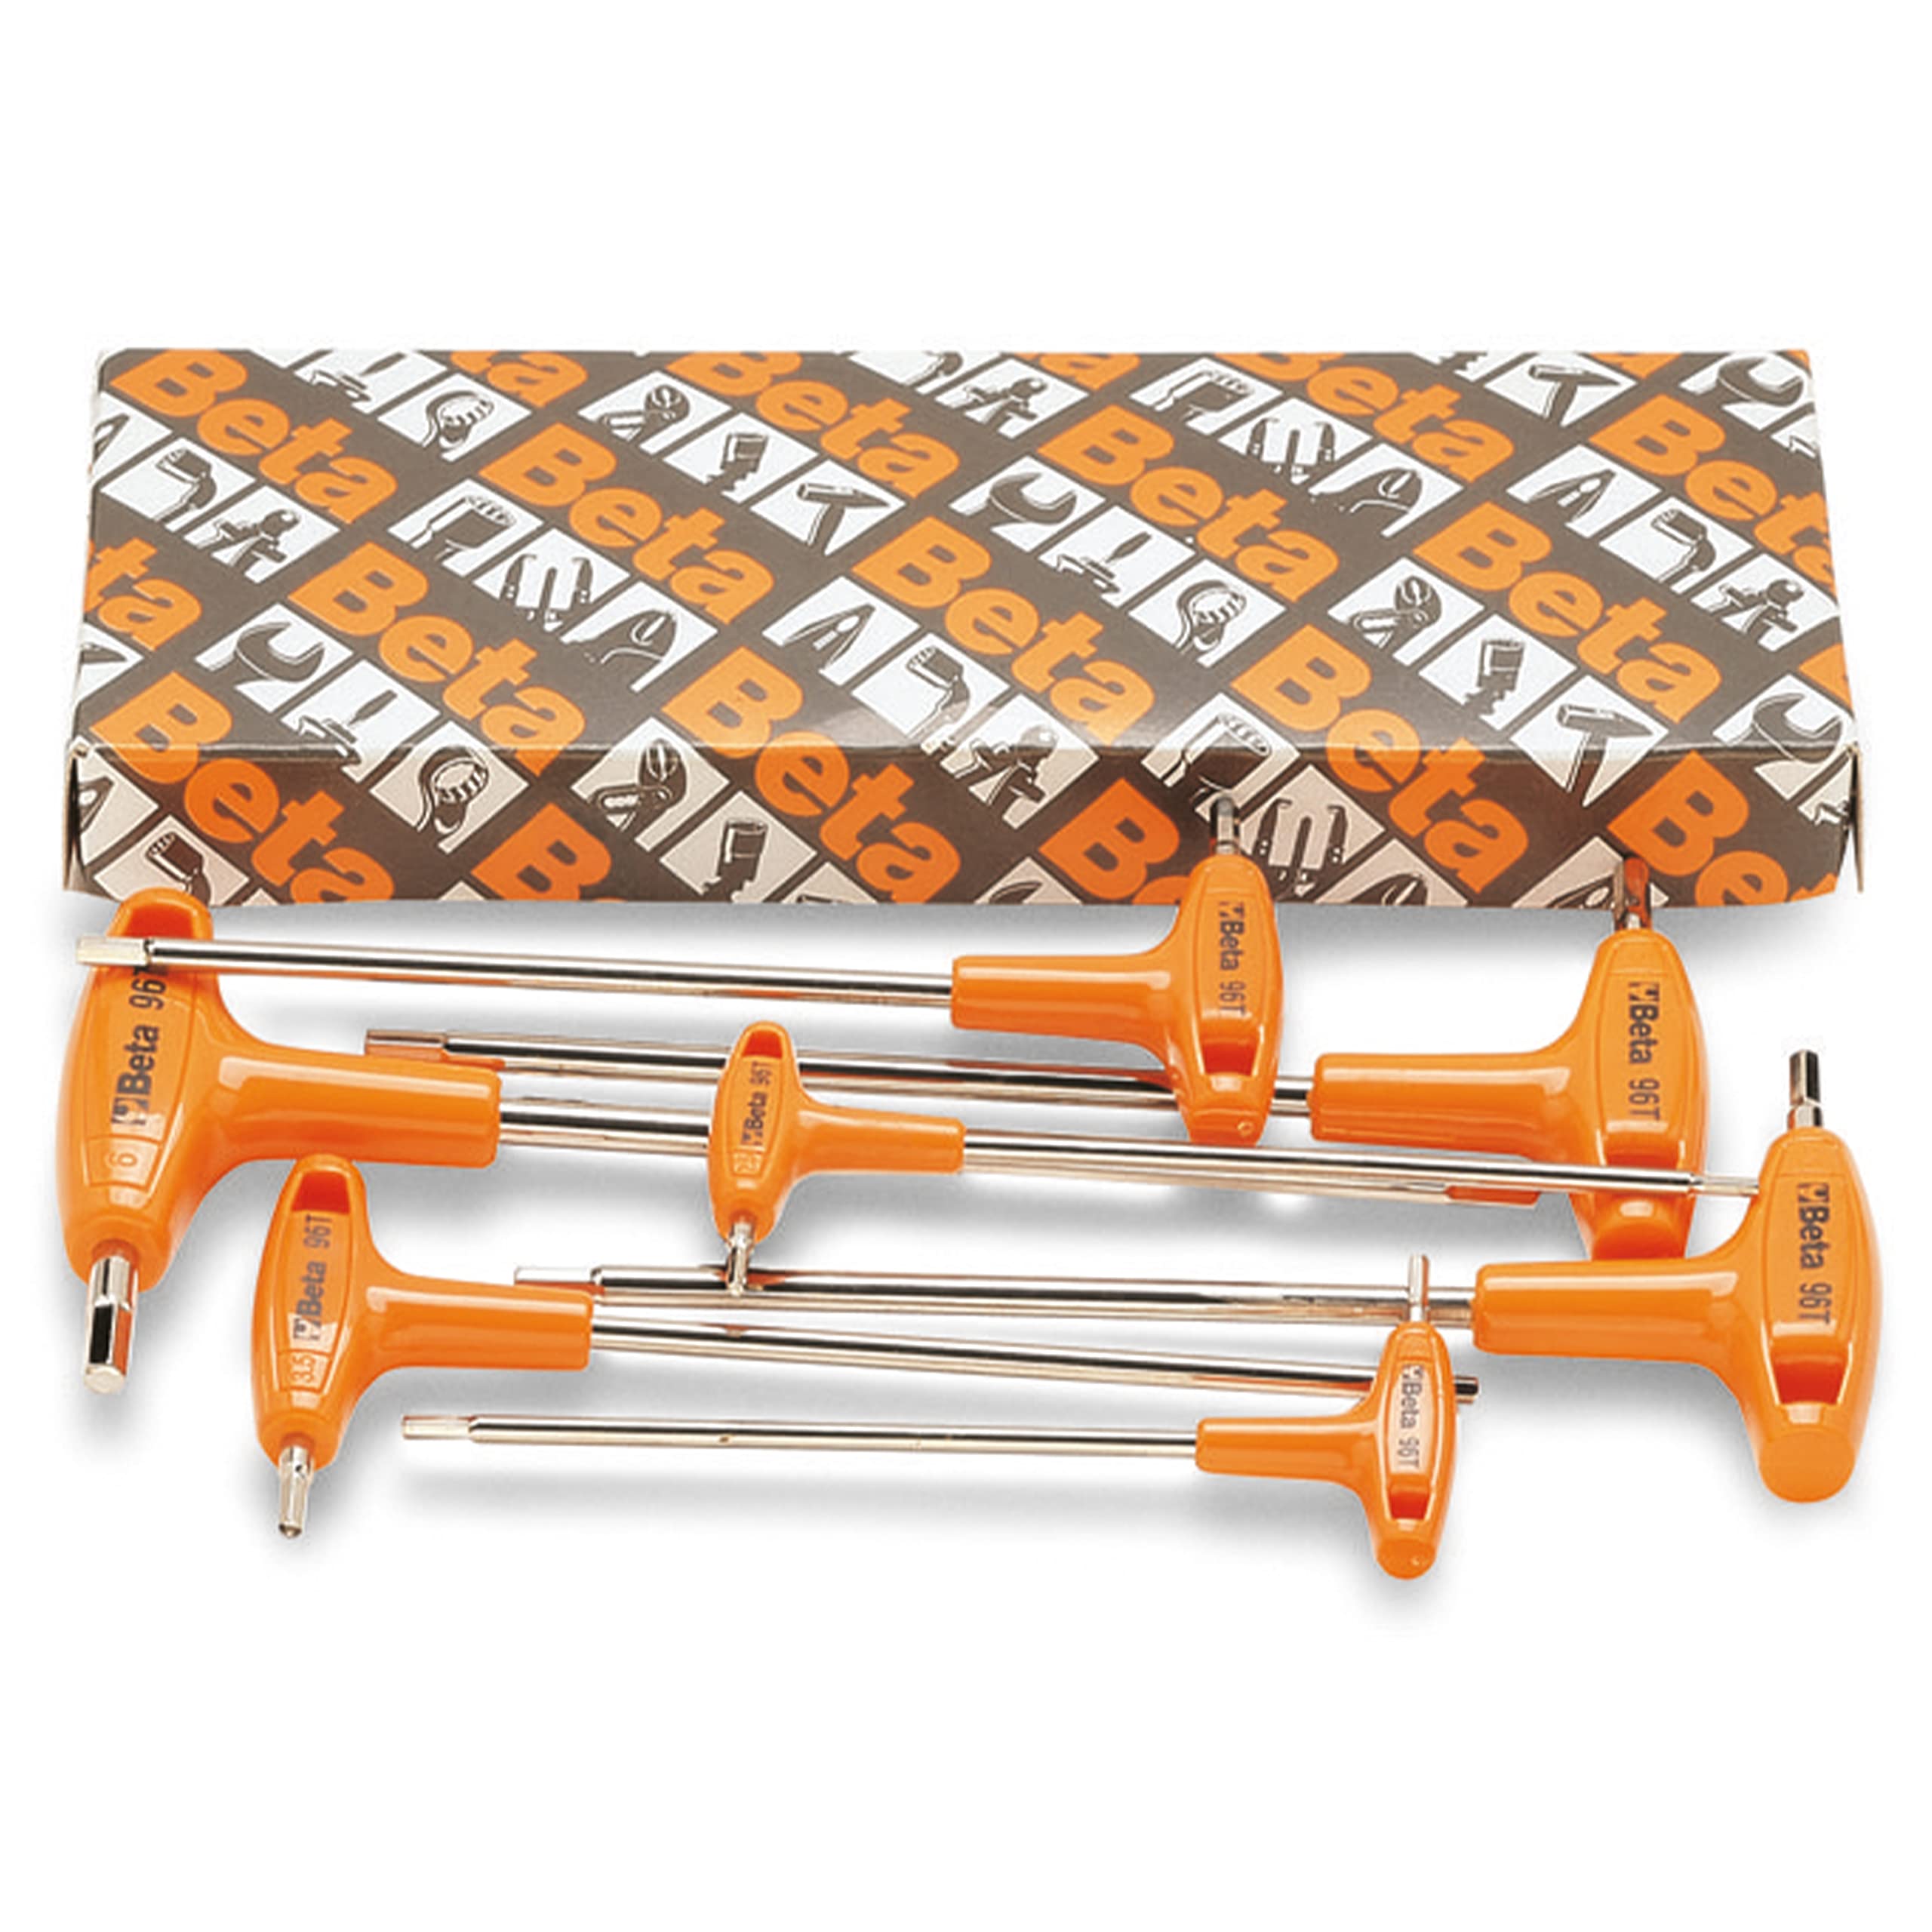 Beta 96T/S Sechskant-Stiftschlüsselsatz, Werkzeug-Set, Werkstatt Tools (7-teiliges Set, gebogen, mit Griff, verchromt, höchst widerstandsfähiges Material, made in Italy), Schwarz/Orange